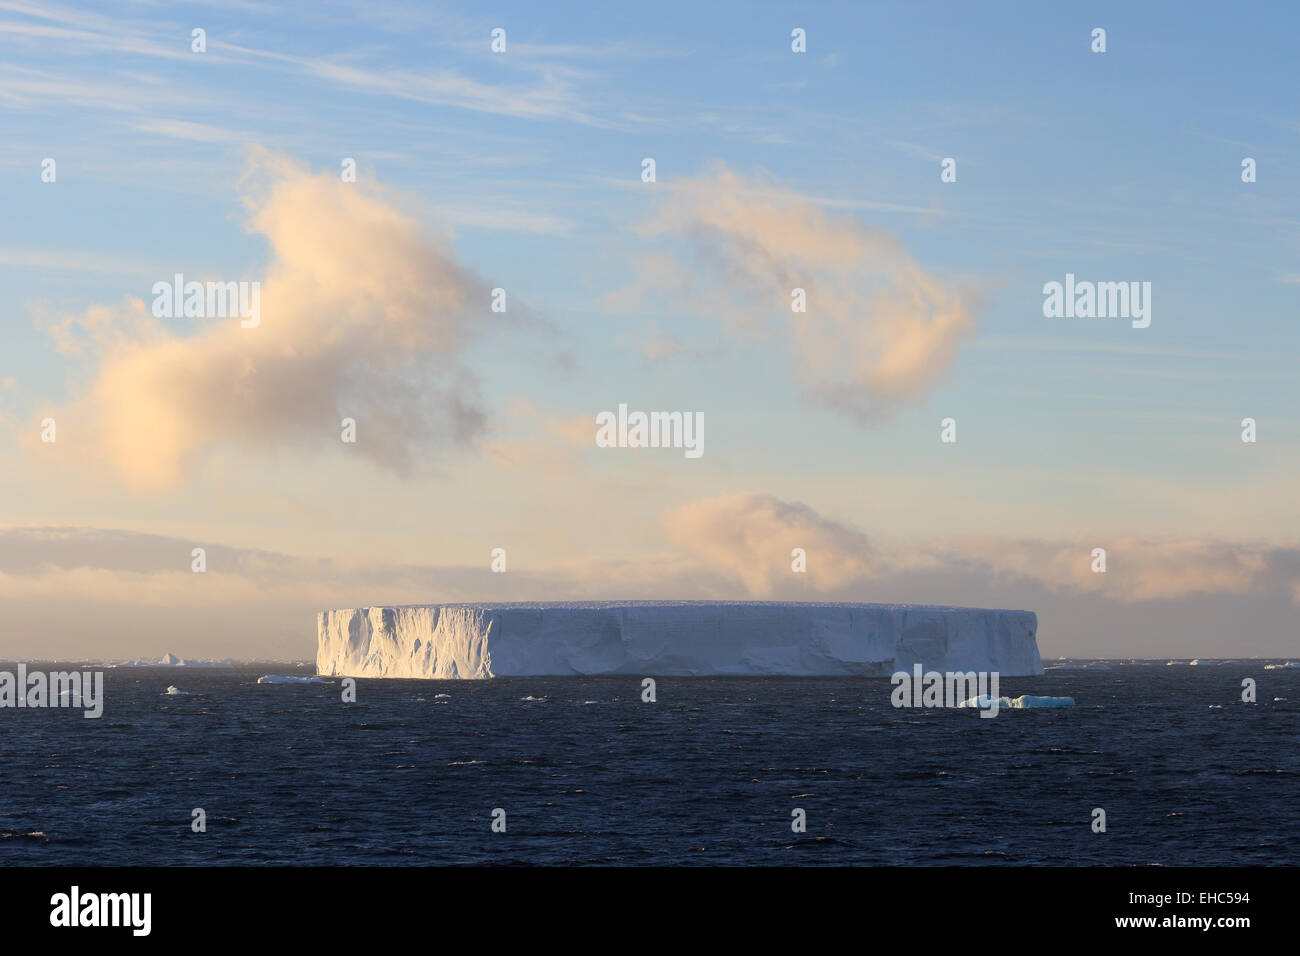 Eisberg, Eisberg, Antarktis tabellarische Landschaft bei Sonnenuntergang. Stockfoto